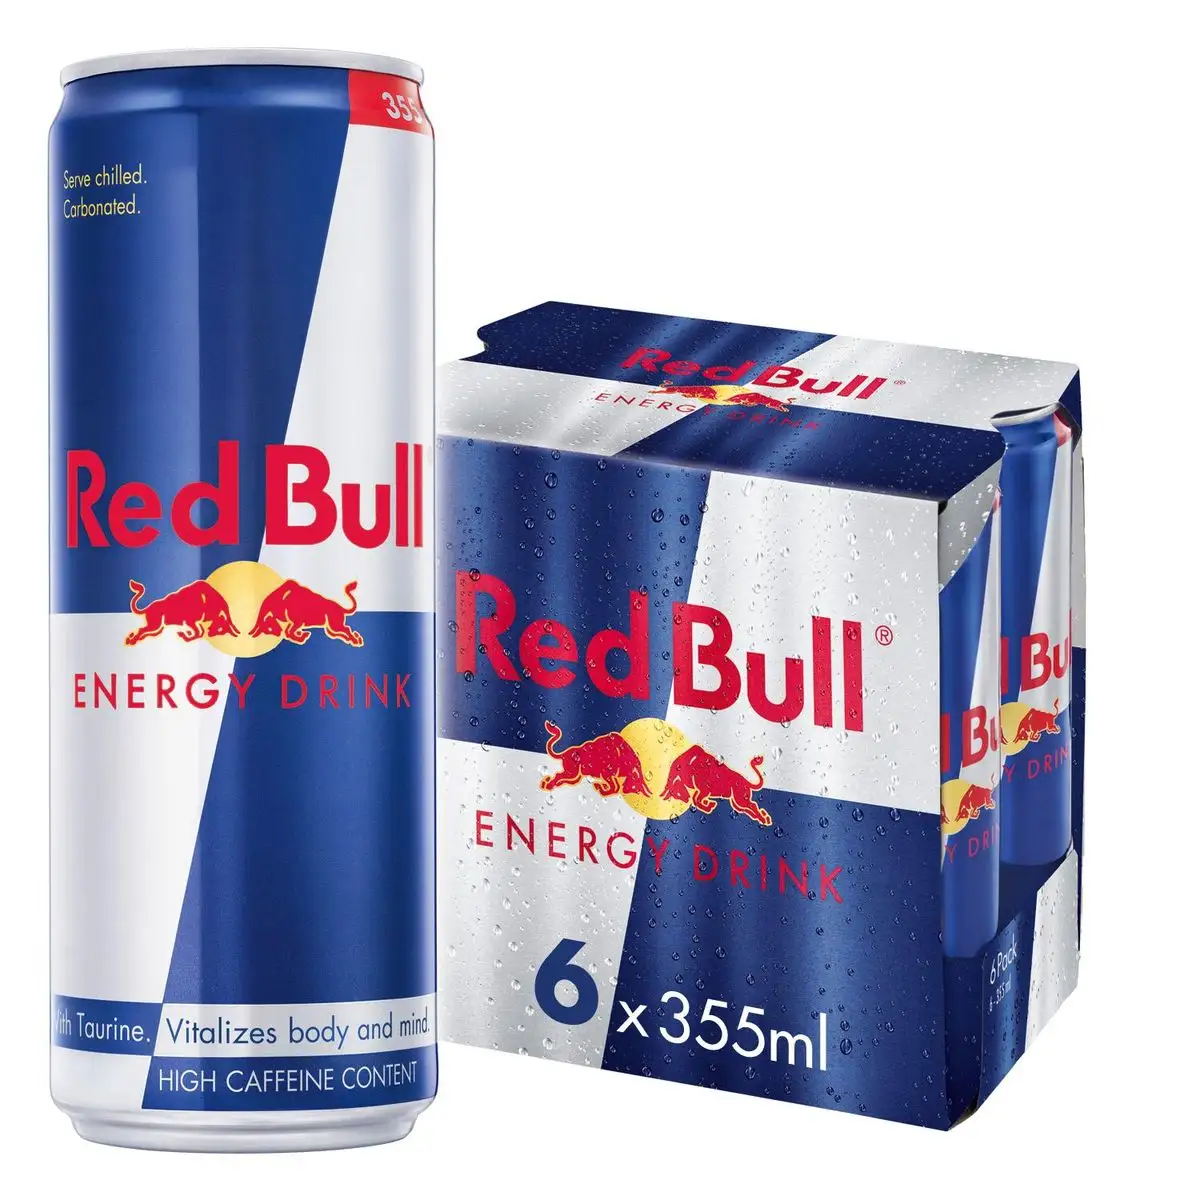 Penawaran diskon kualitas tinggi asli Red Bull 250ml minuman energi siap untuk ekspor Redbull